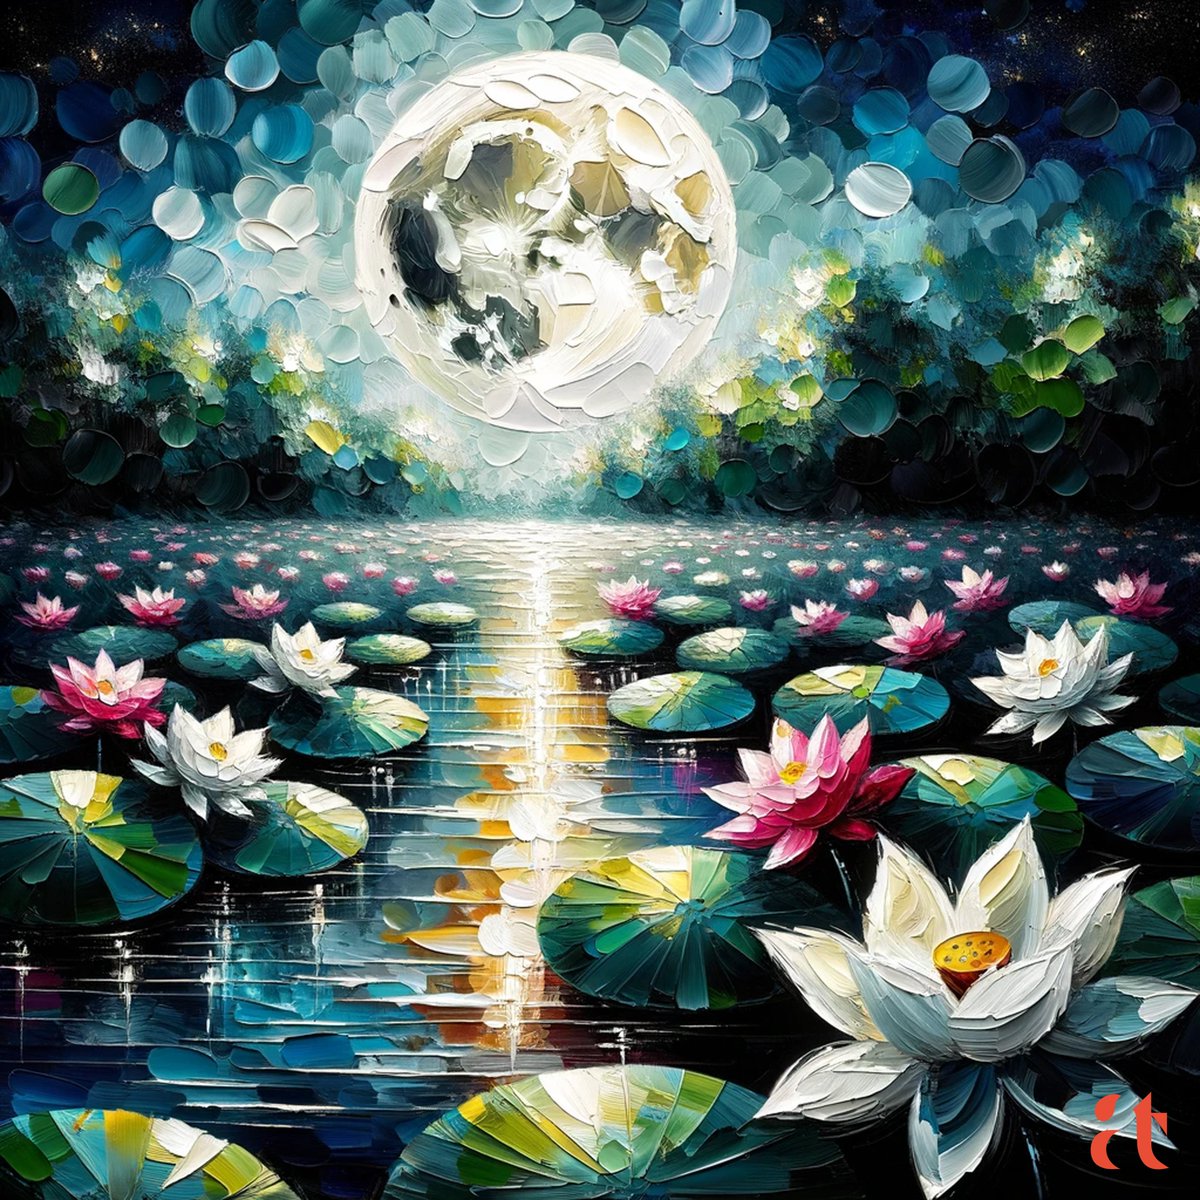 Lunar Lotus Serenade by Aravind Reddy Tarugu
#AravindReddyTaruguArt #Aravind #Reddy #Tarugu #AravindReddyTarugu #MoonlitLotusPond #NatureArt #LunarReflection #FloralArtistry #WhimsicalNature
#NightBlossoms #SereneLotus #MoonGlowArt #LotusElegance #PastelArt #HandPaint